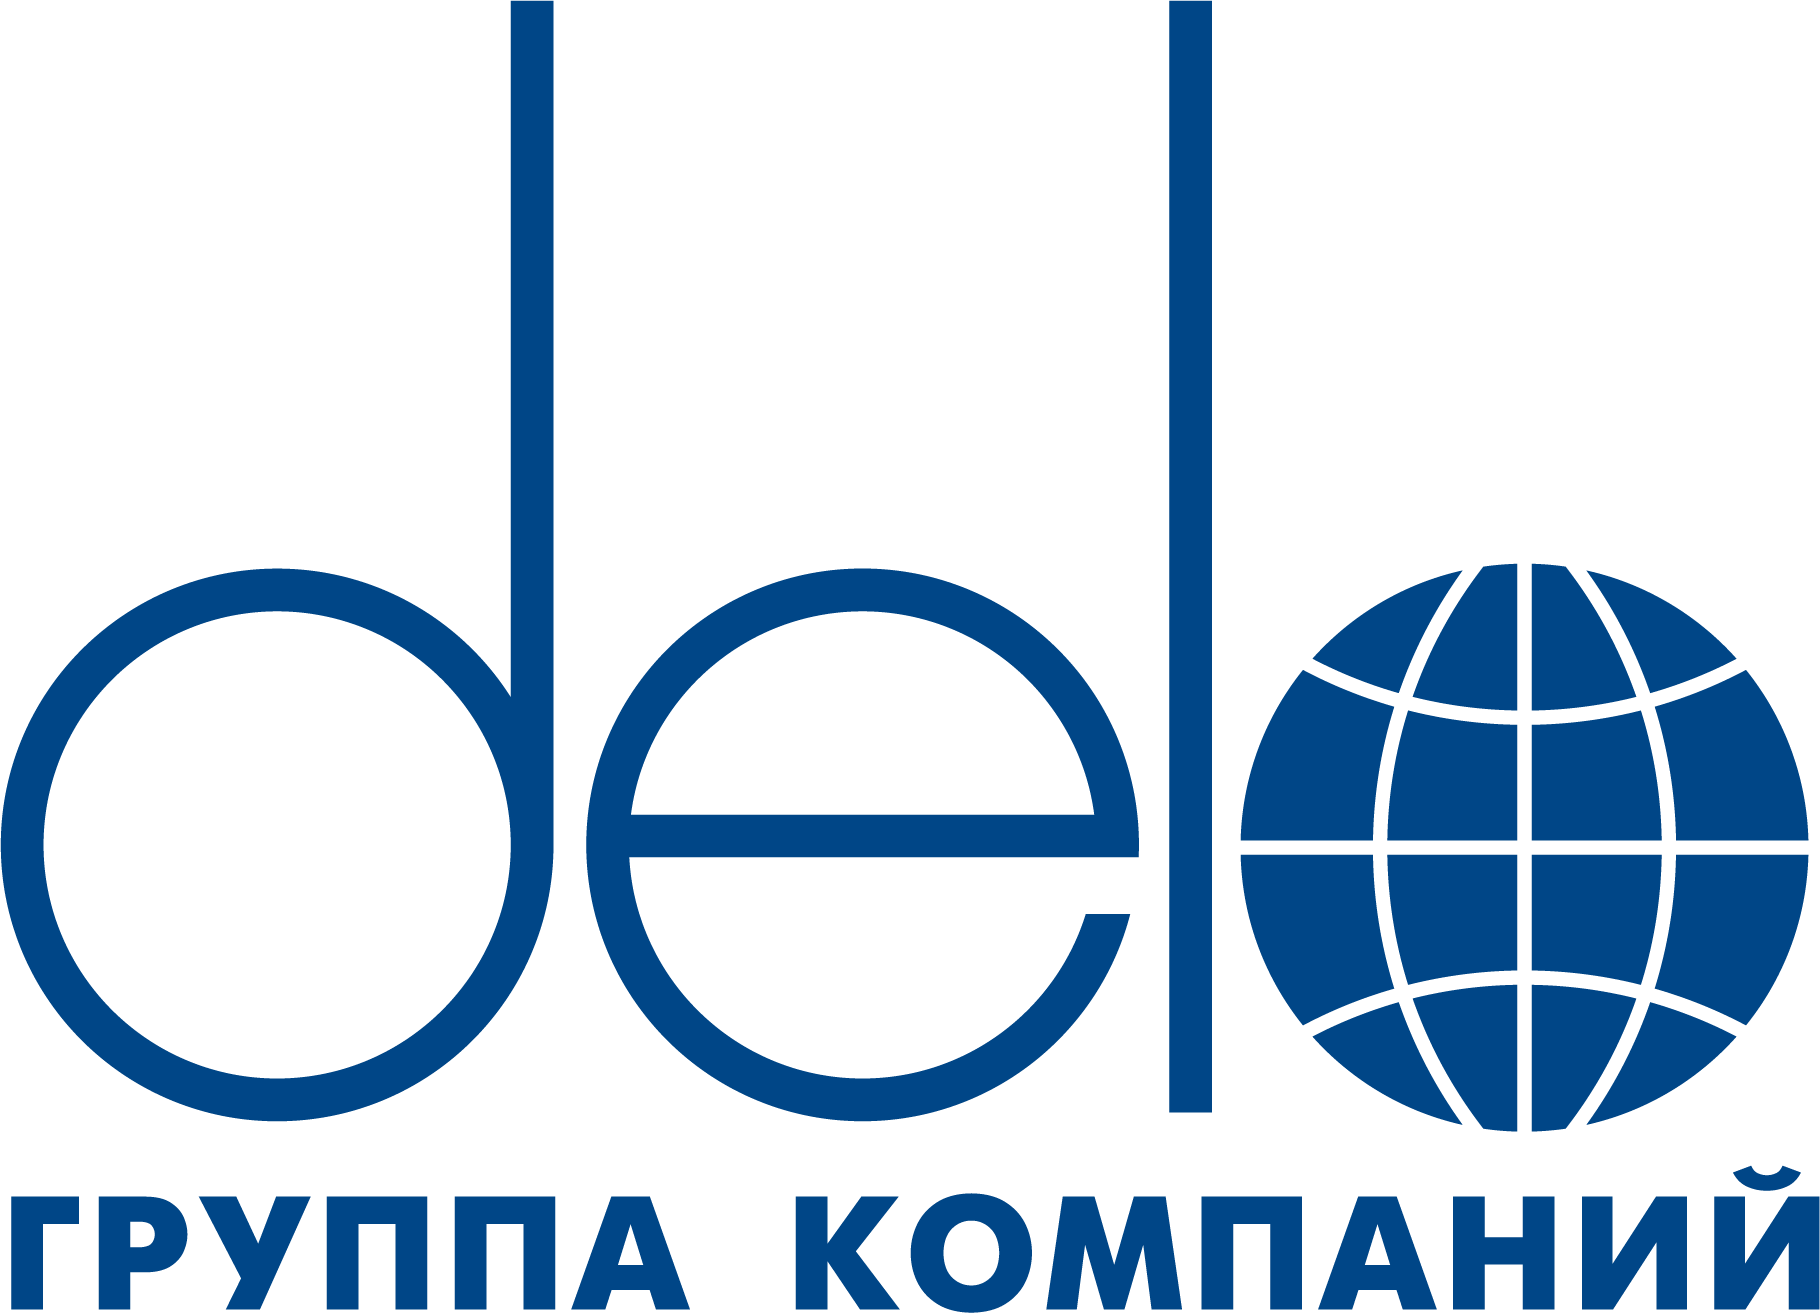 Delo Group logo